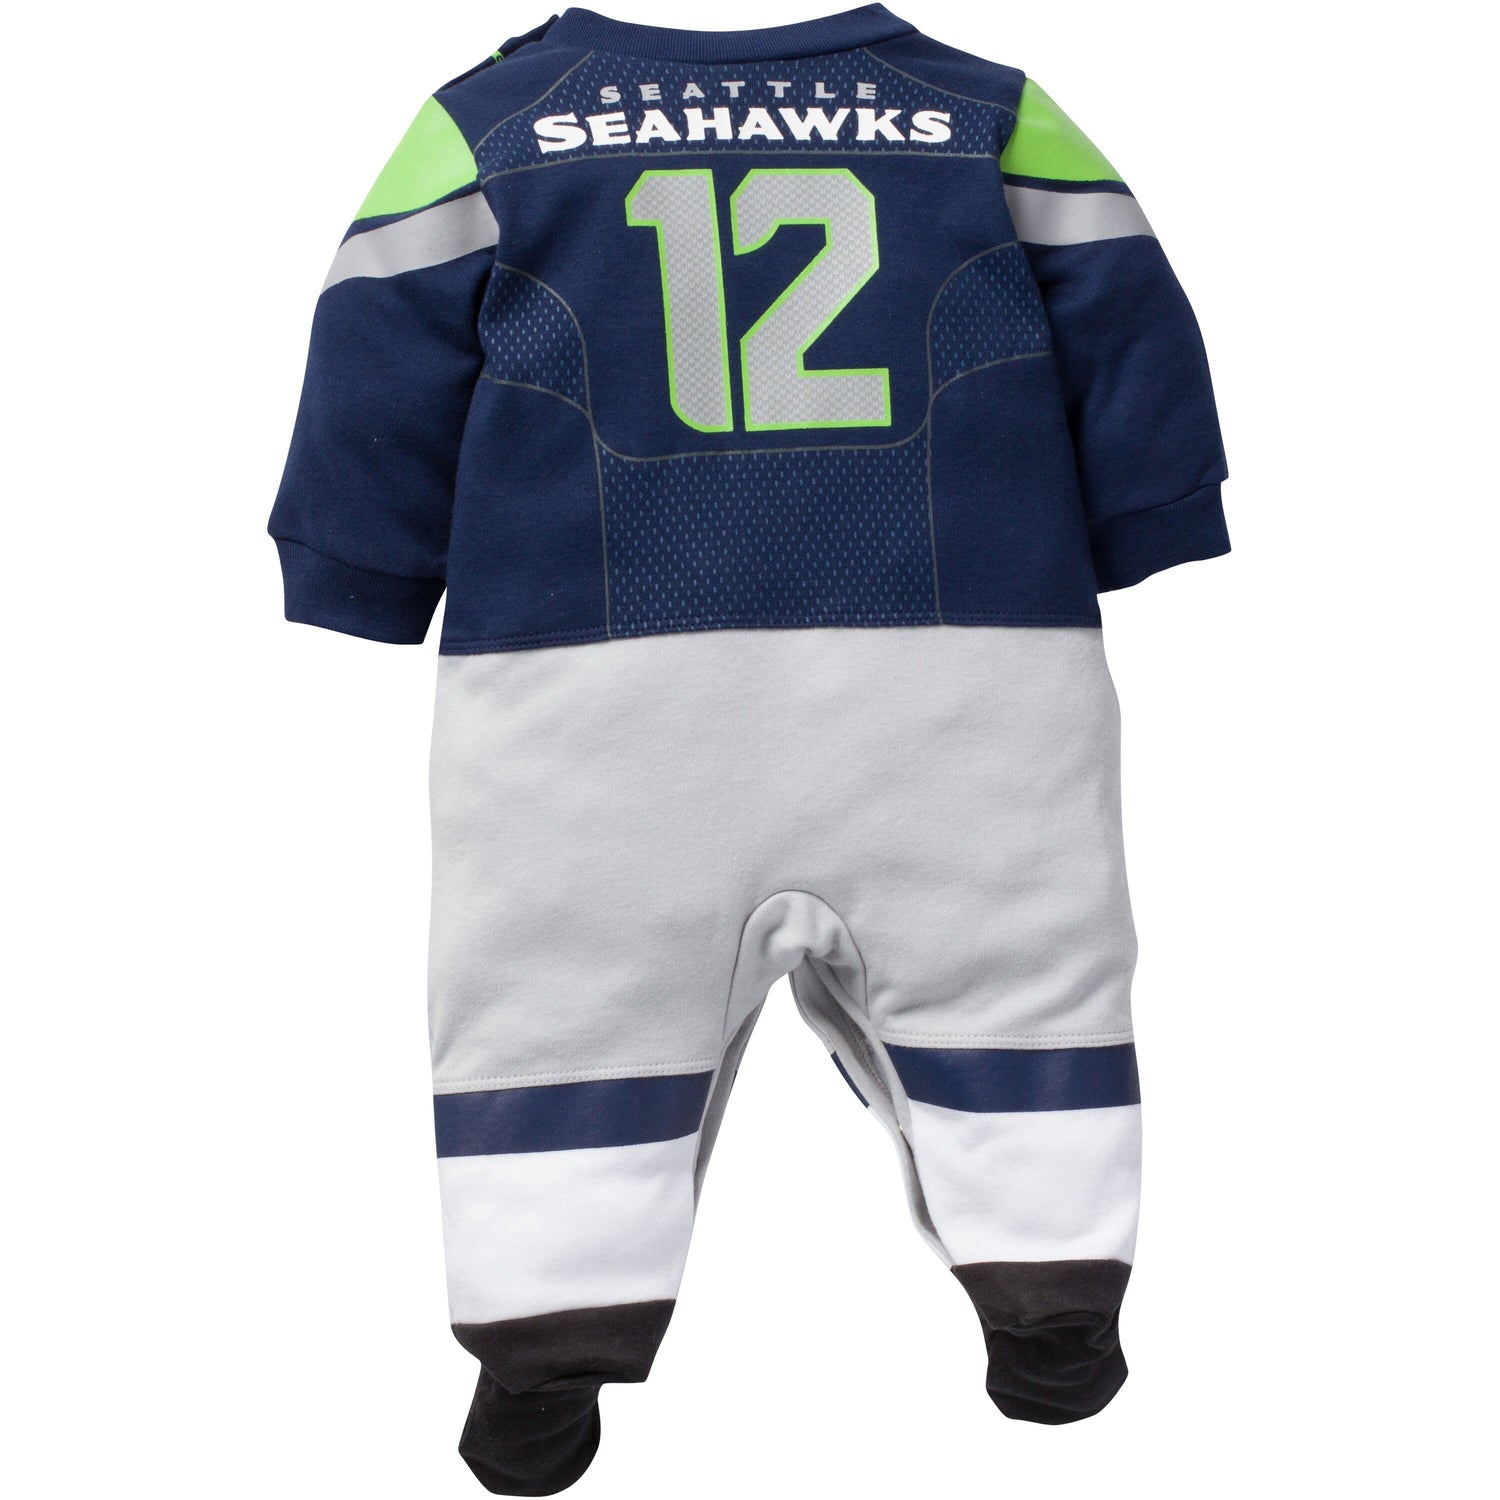 seahawks hockey jersey